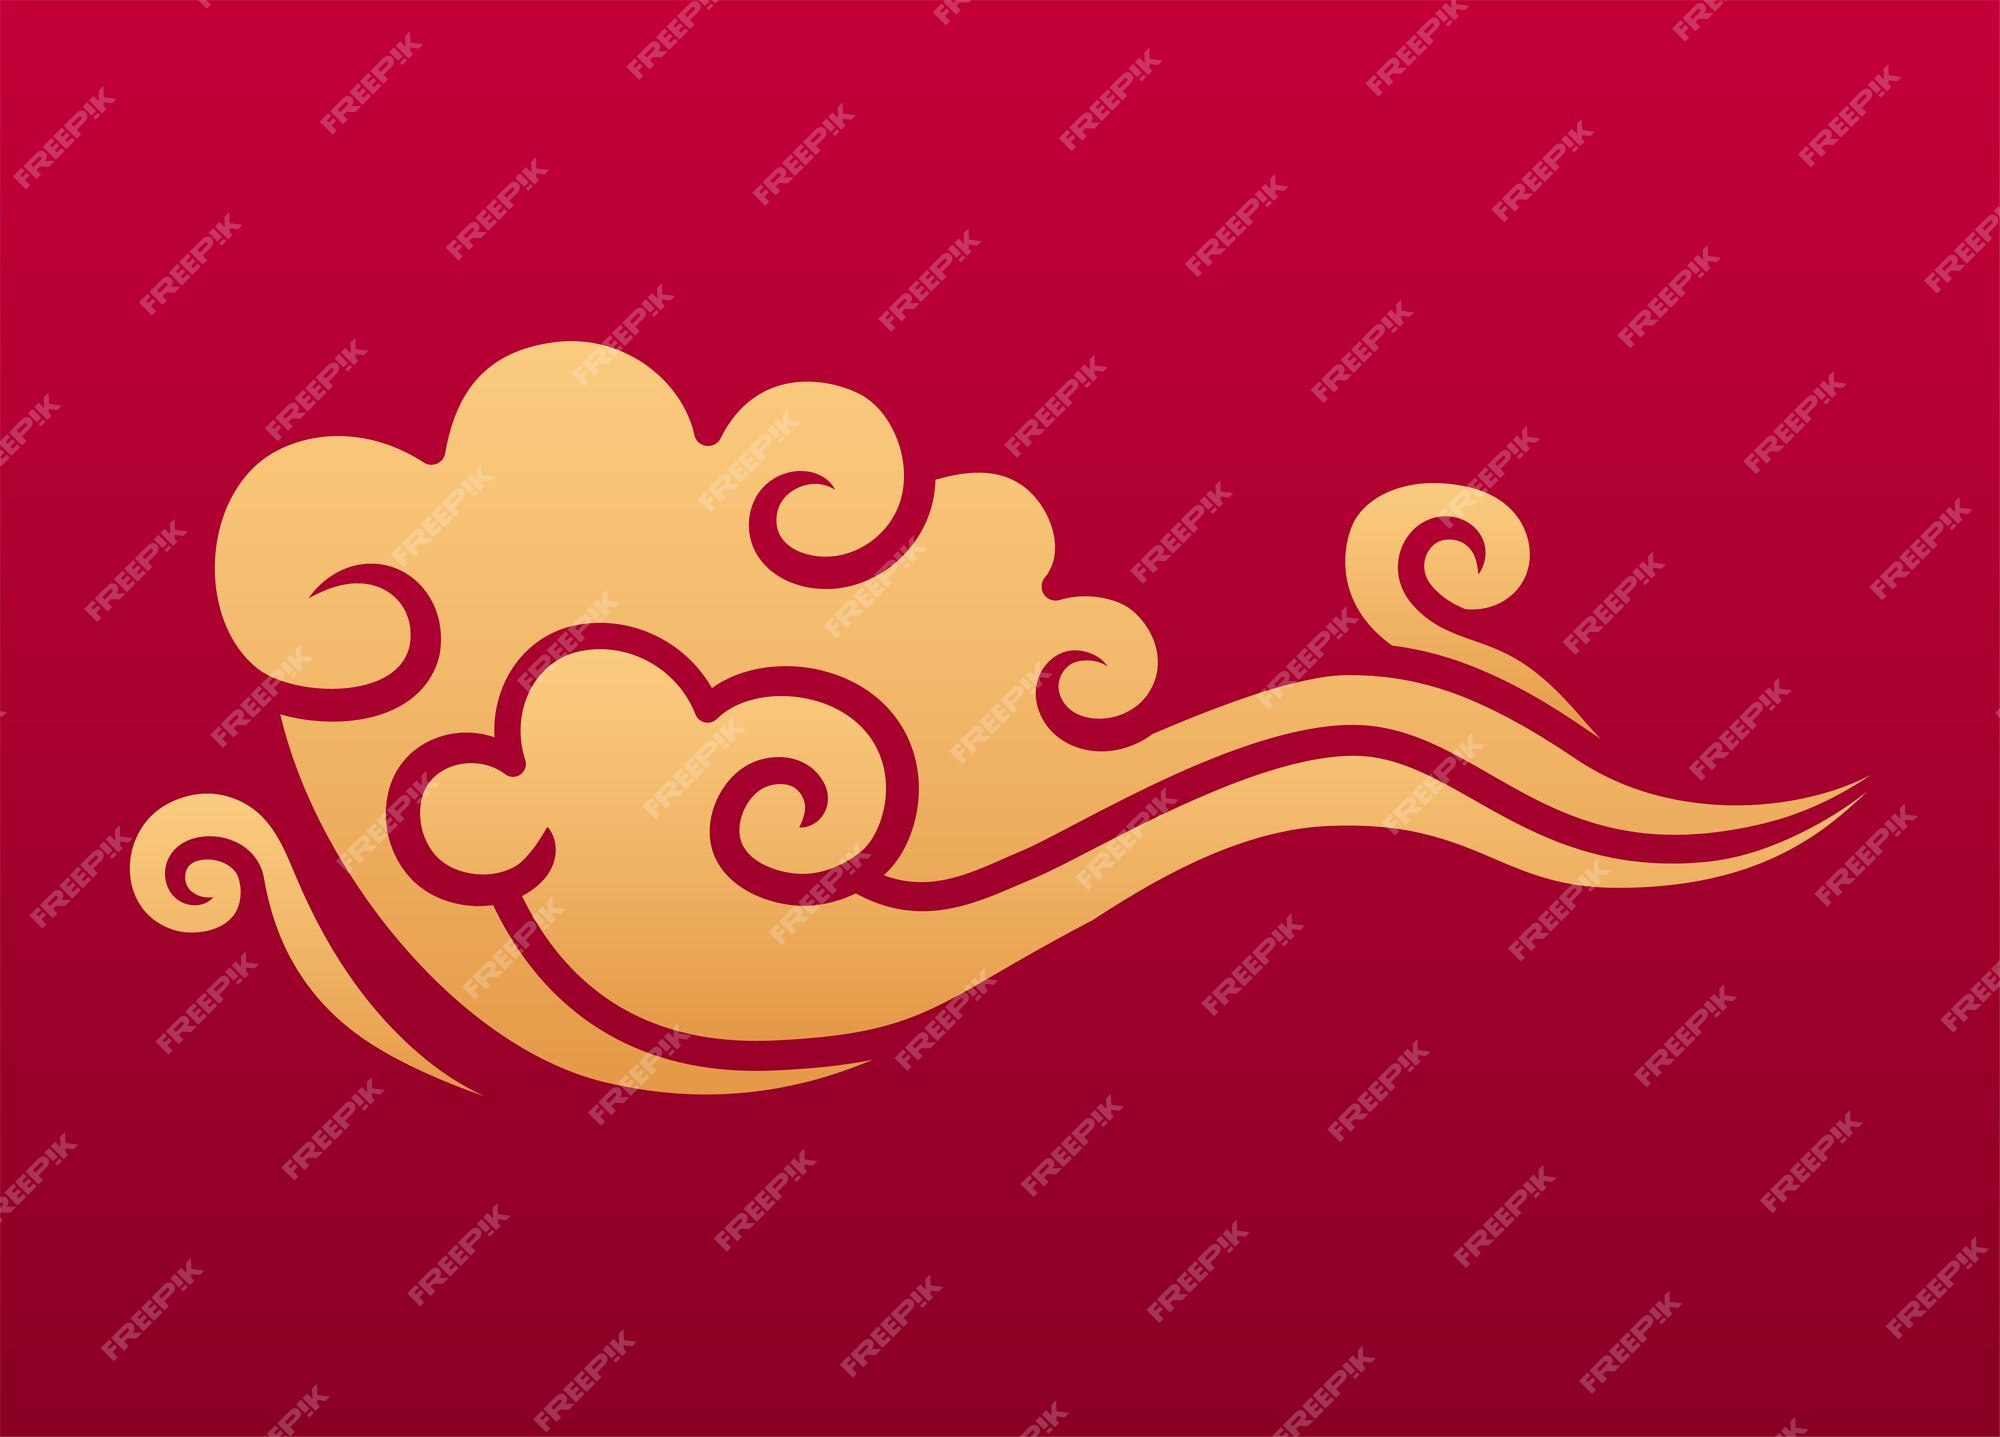 Elemento de decoração festiva de nuvem. símbolo do céu chinês